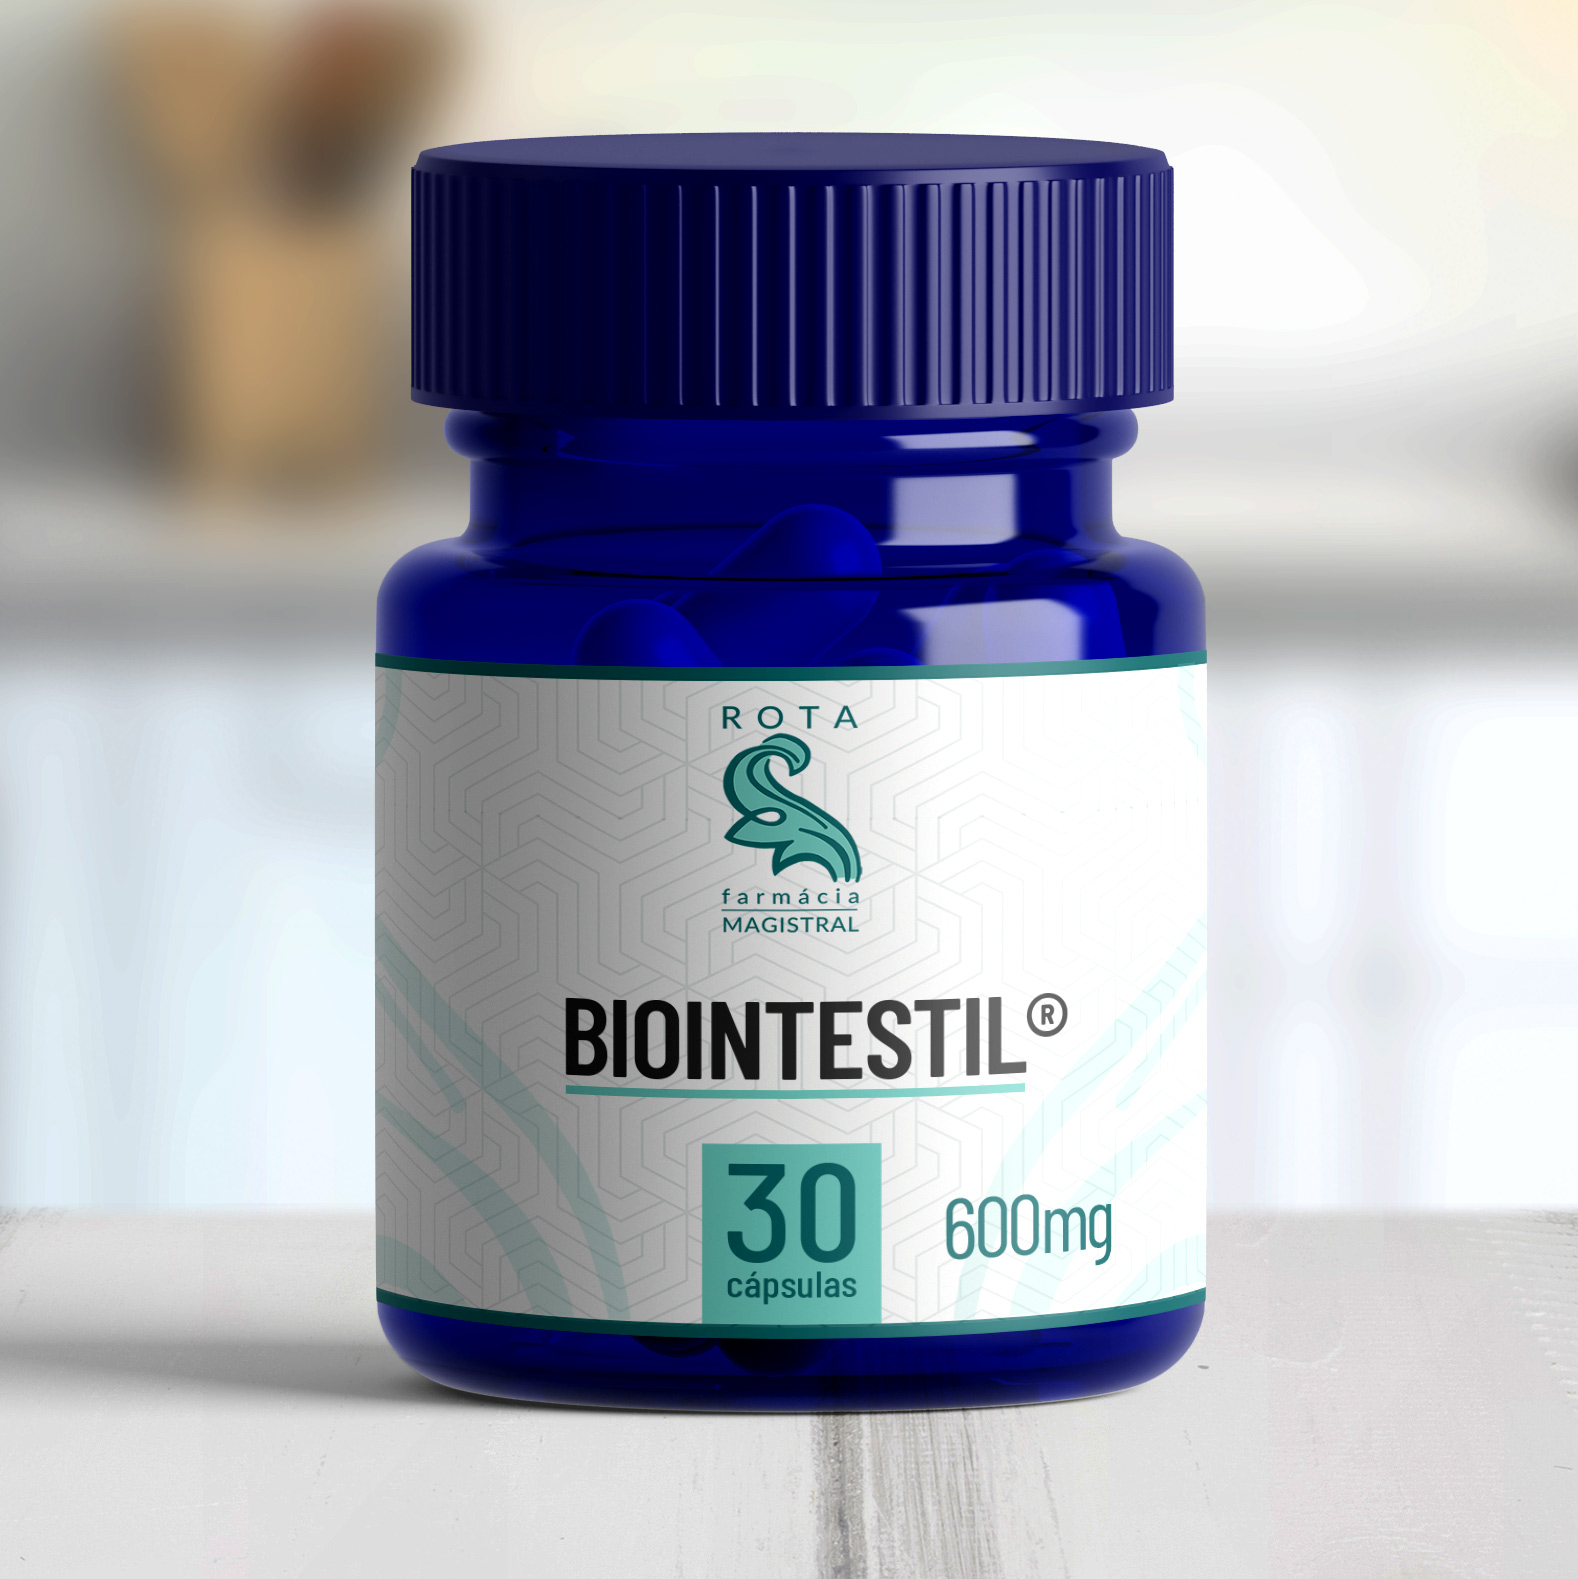 Biointestil ® 600mg 30 cápsulas